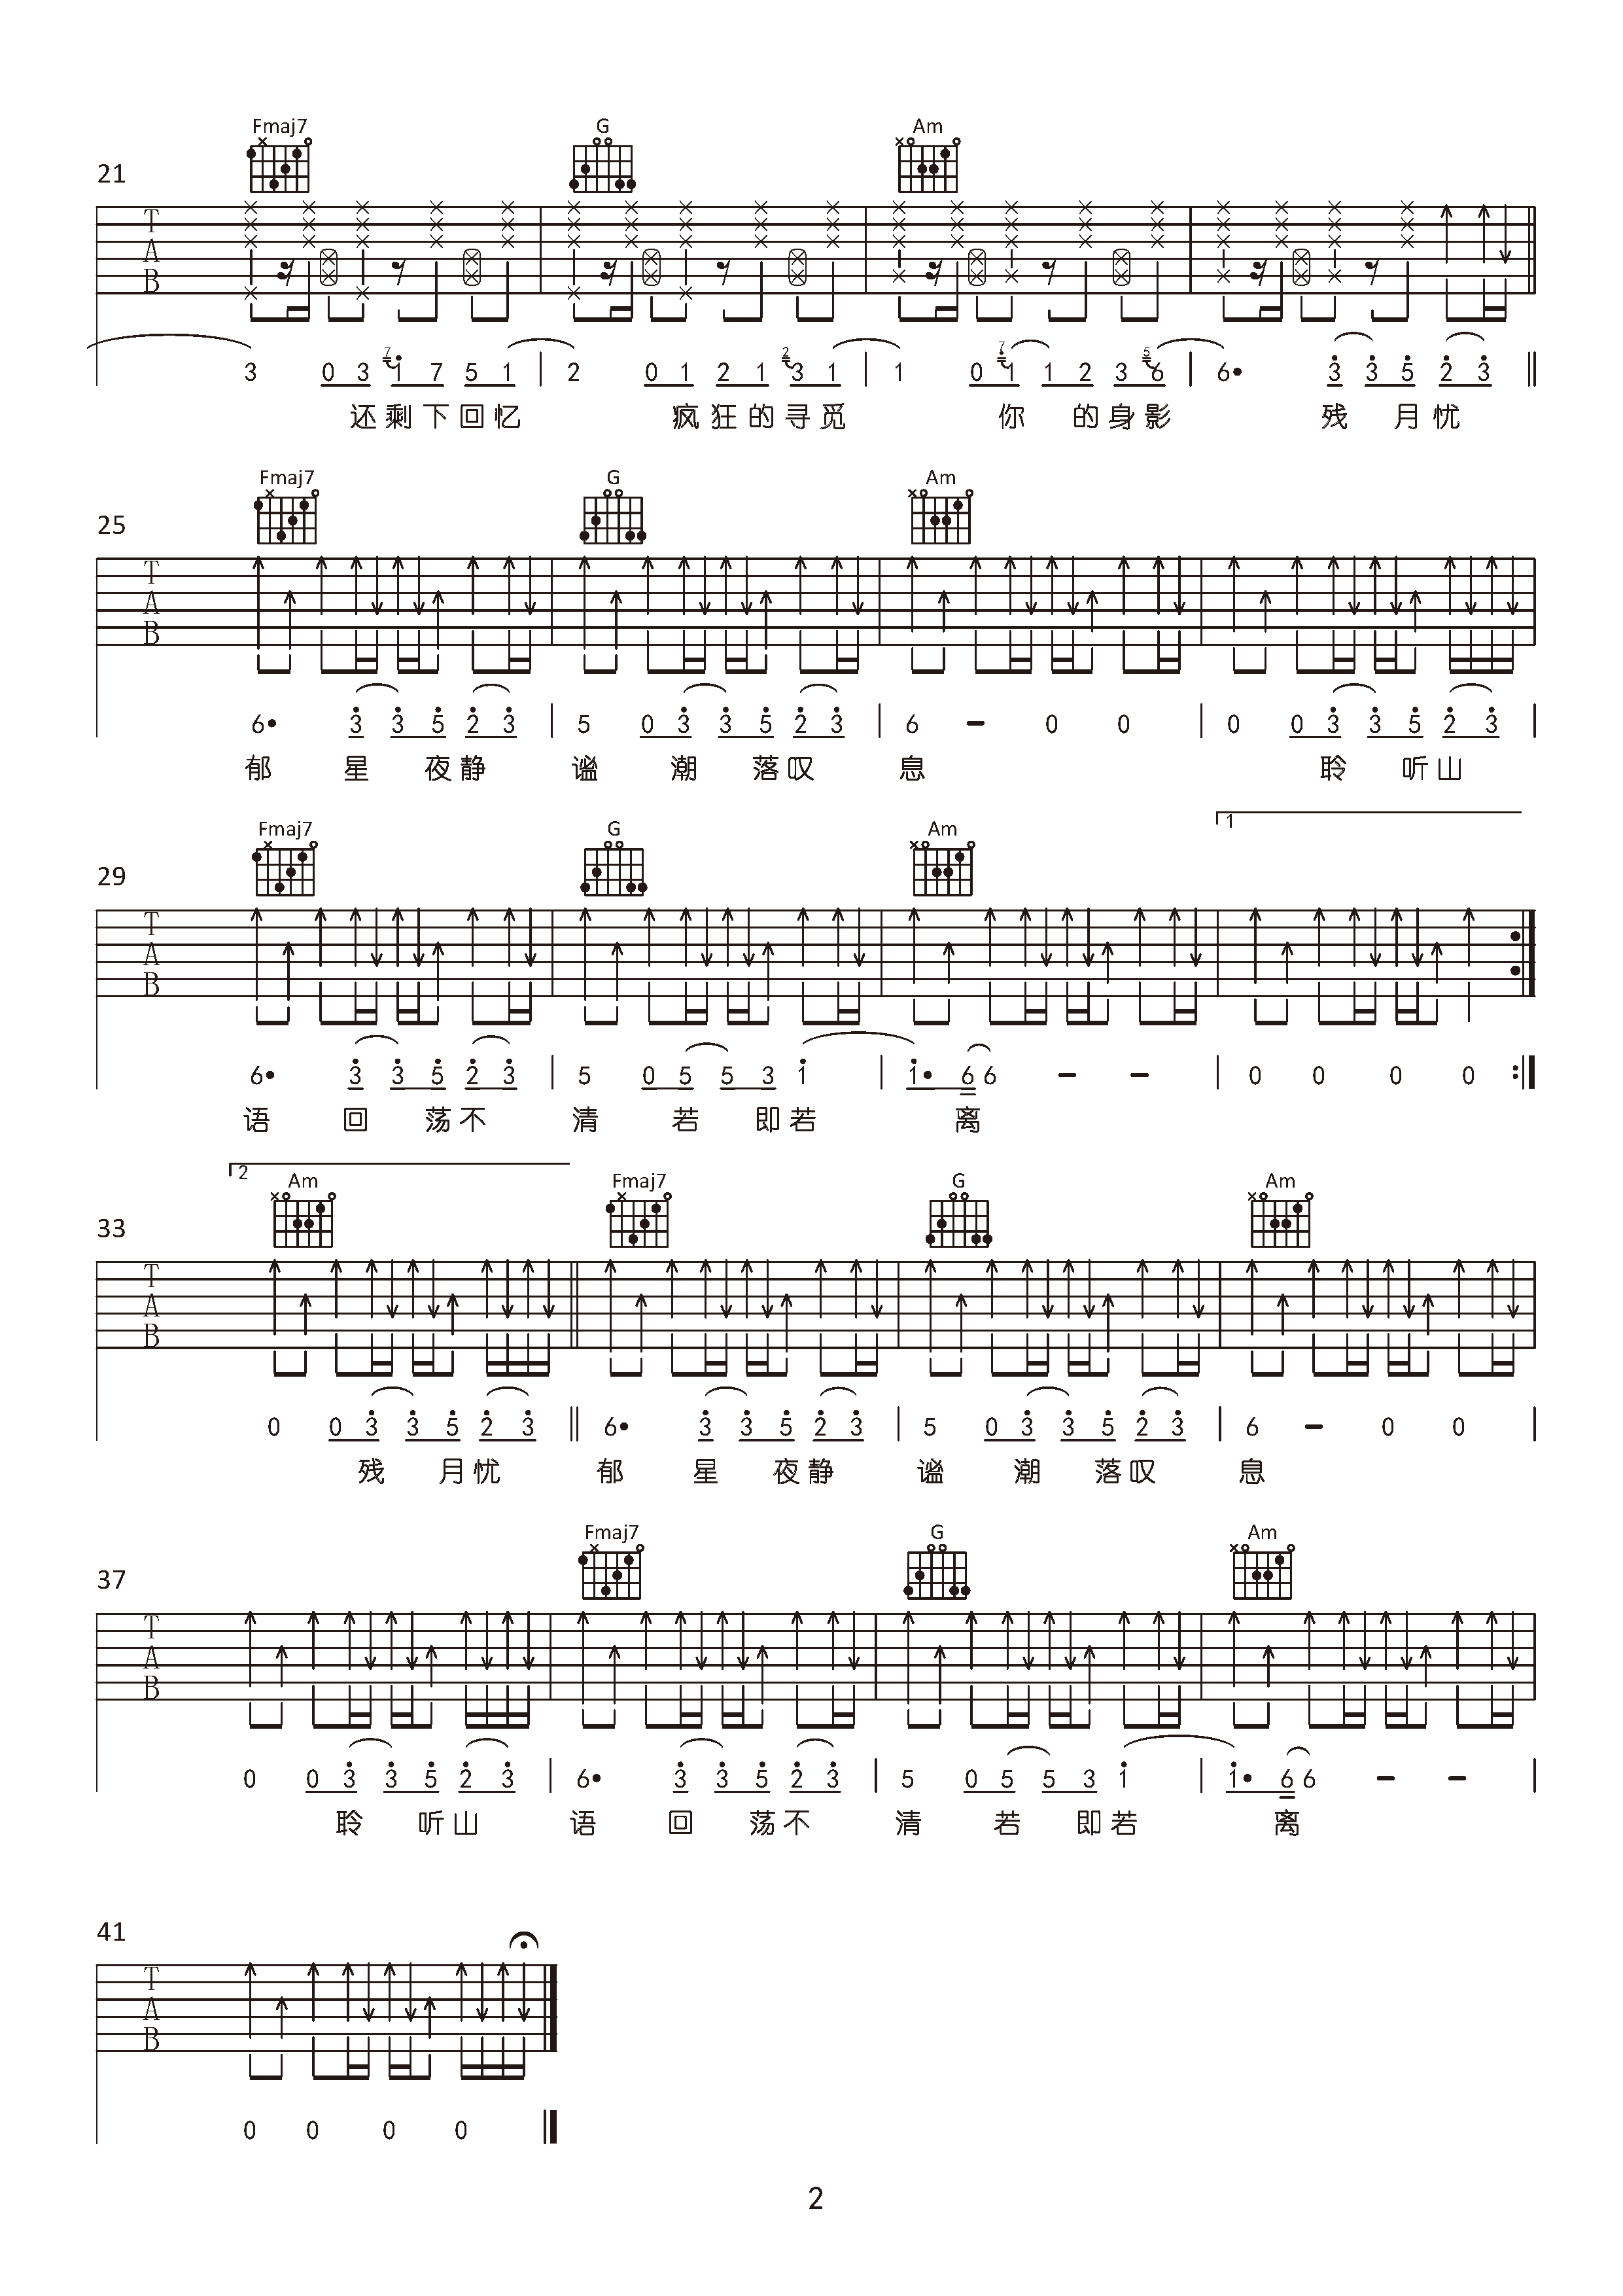 图2《潮汐》吉他谱由susanguitar用户搜集整理,包括 《潮汐》 歌词